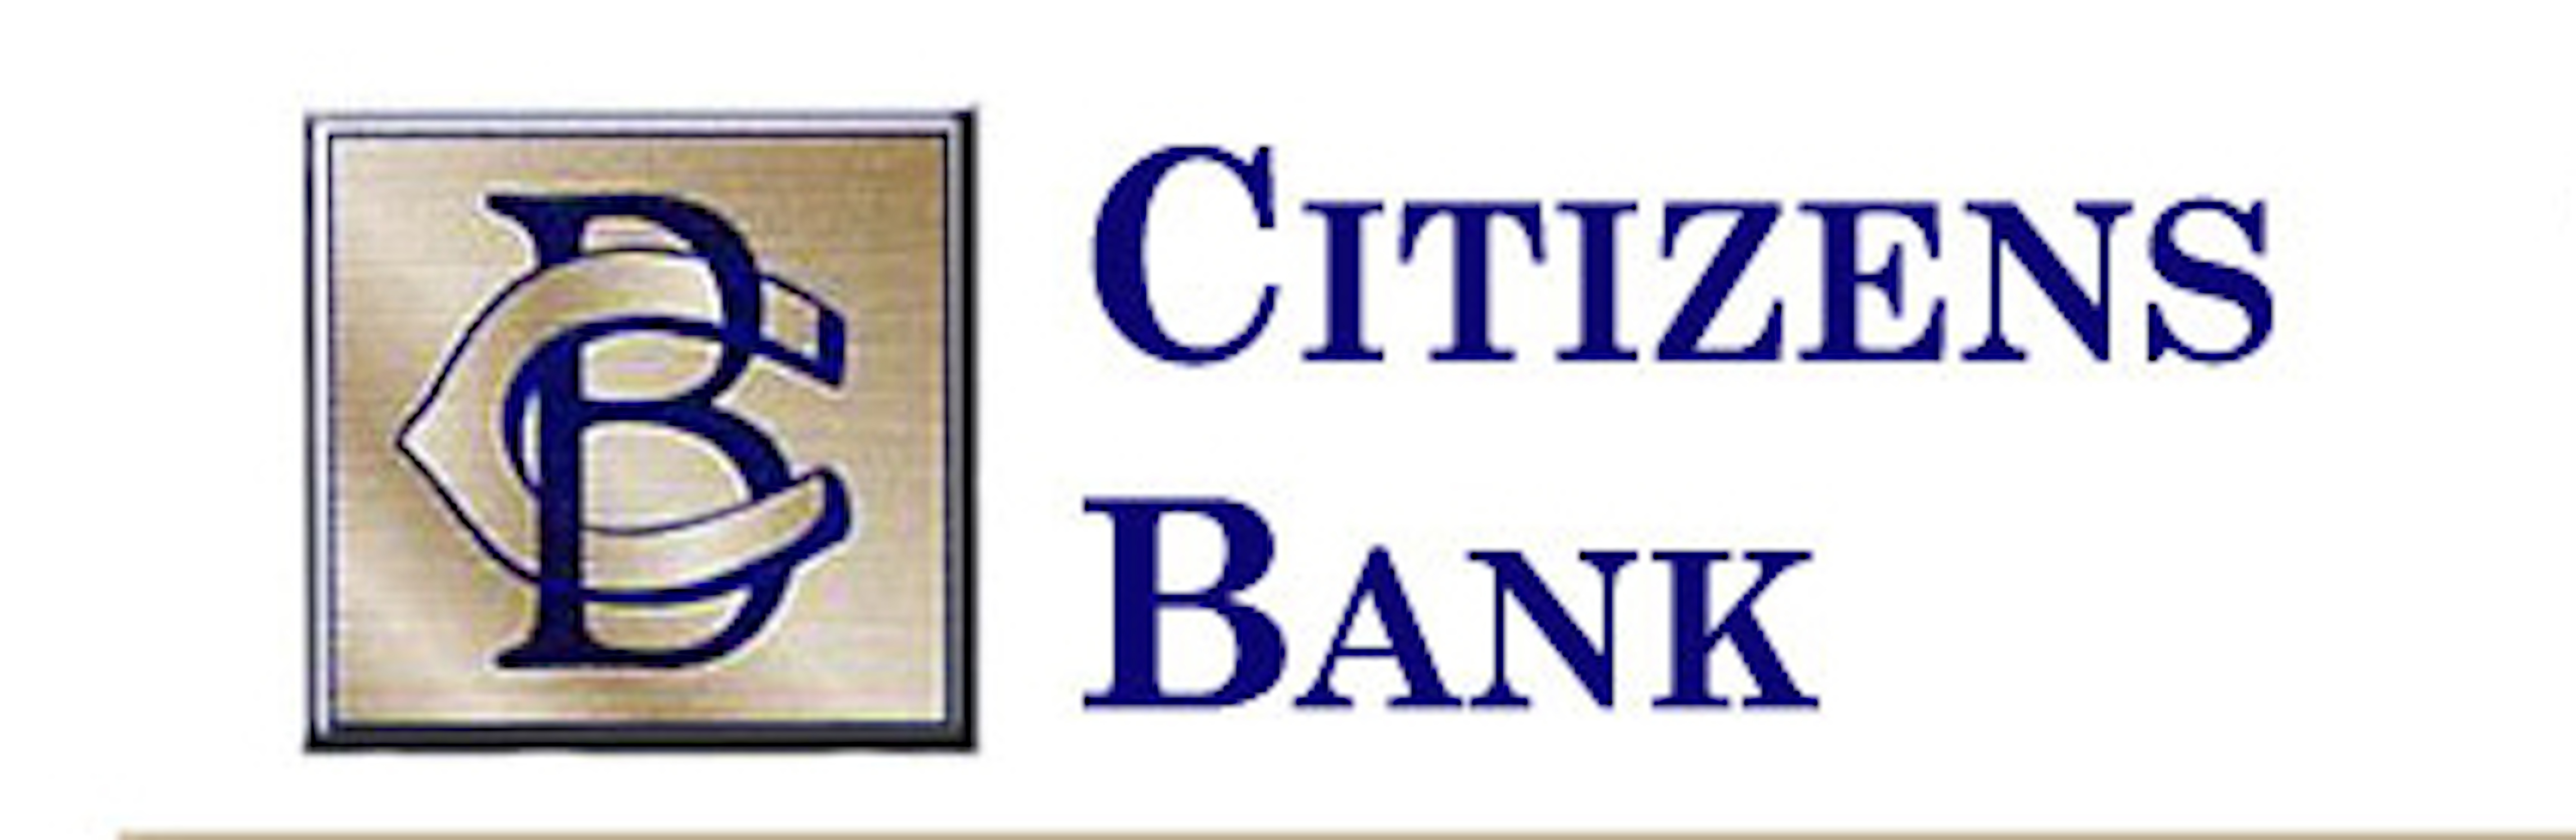 citizen's bank logo